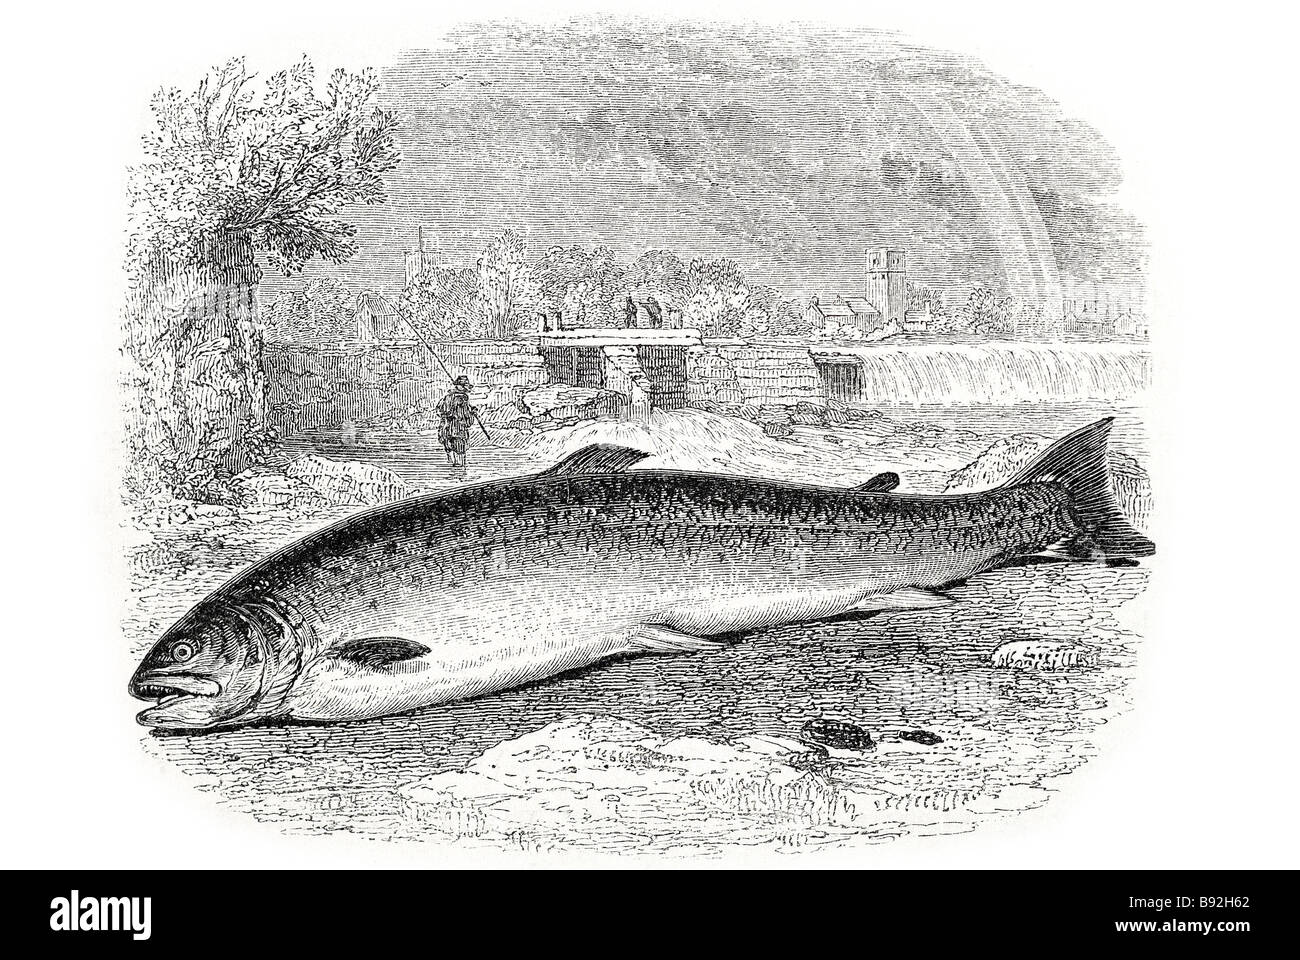 La truite saumon sont un certain nombre d'espèces de poissons d'eau douce appartenant à la famille des salmoninés de la famille des salmonidés. Salmon b Banque D'Images